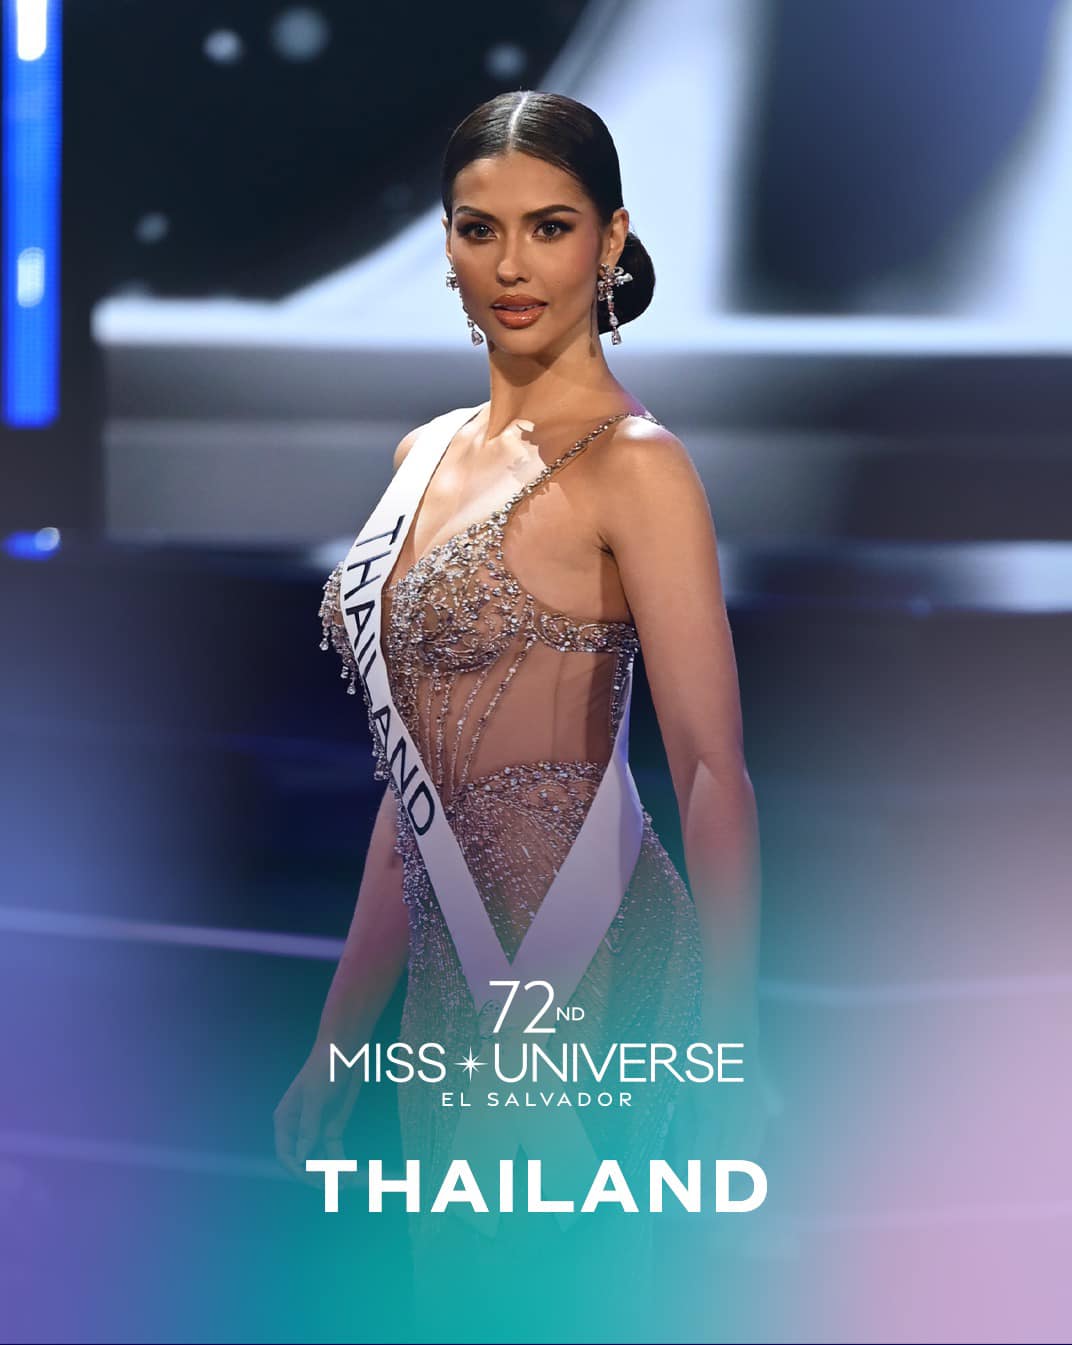 Người đẹp Nicaragua đăng quang Miss Universe 2023, dân tình hoang mang tên đất nước nghe lạ quá - ảnh 4